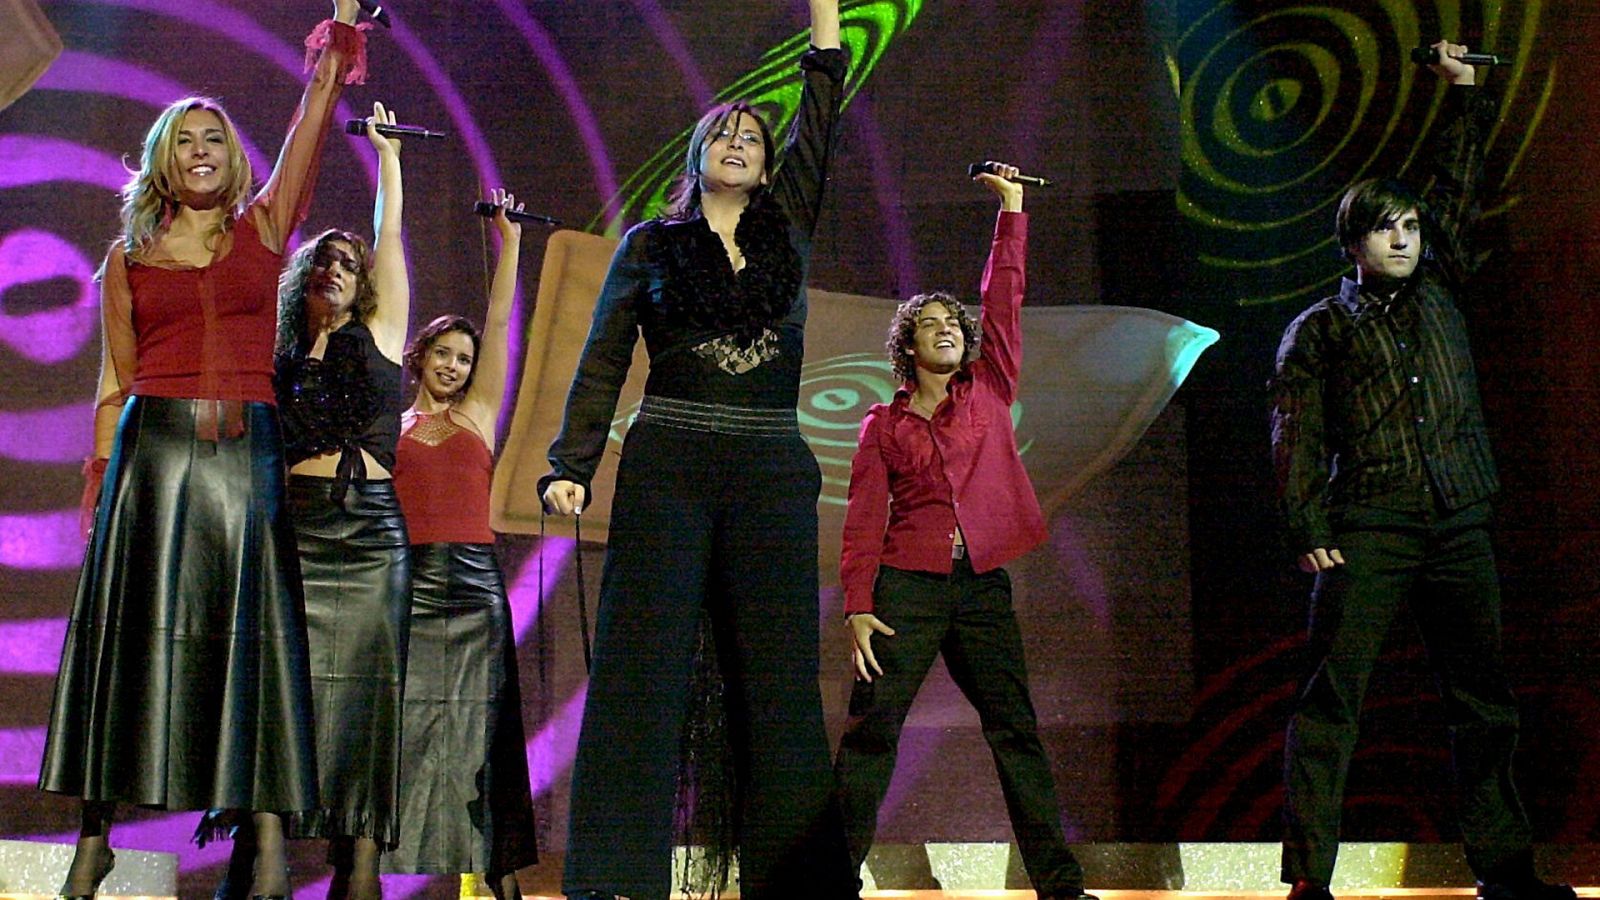 Rosa López canta "Europe's living a celebration" en Tallín 2002